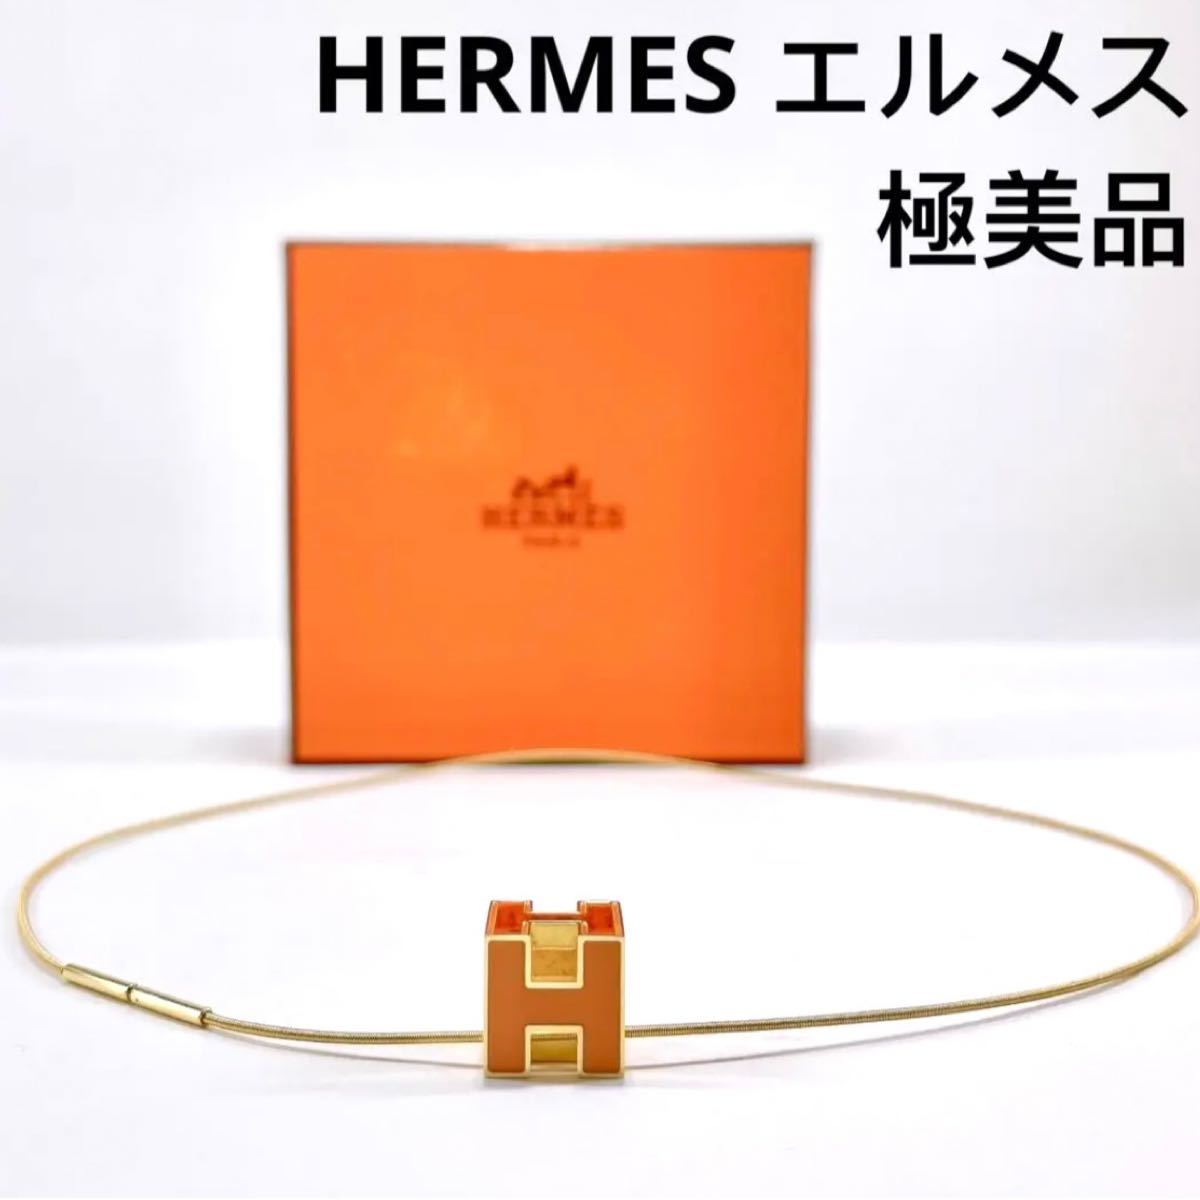 HERMES /エルメス アルソー(1990年) Hロゴプレス 男性用 腕時計 